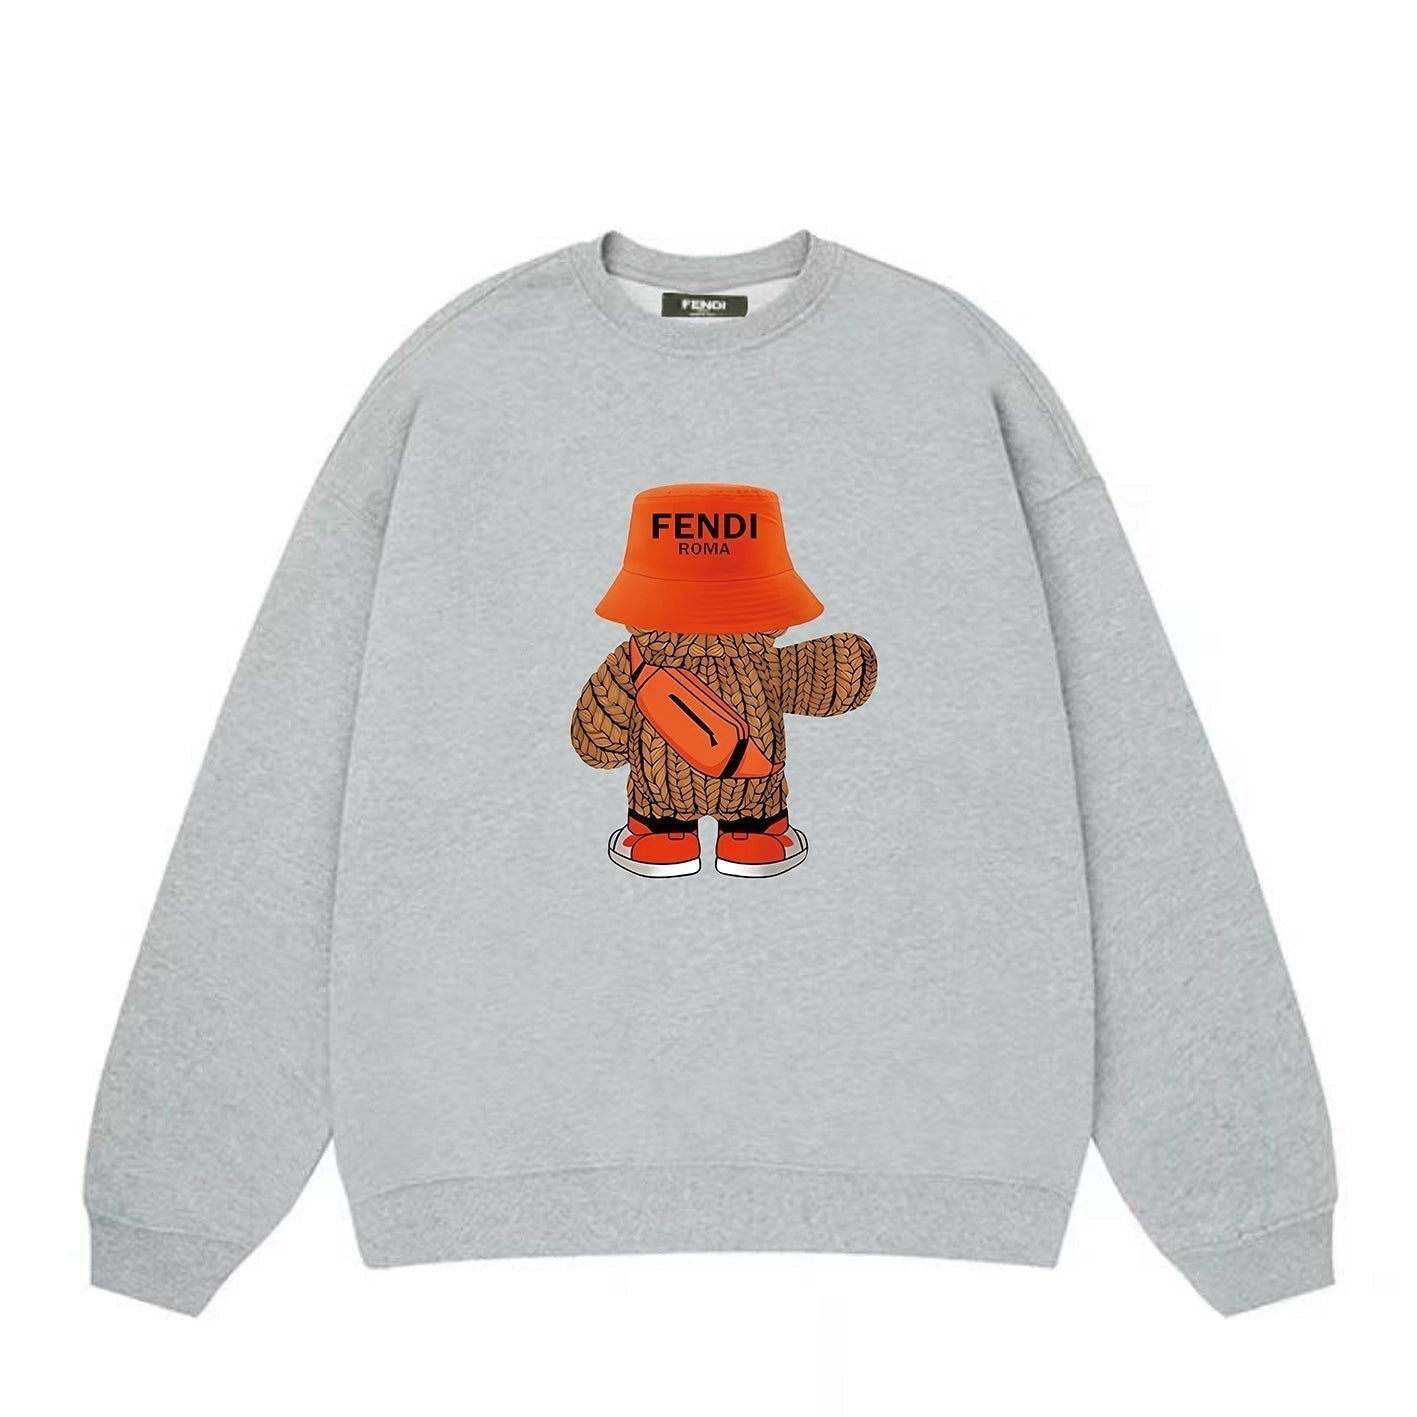 Bear Printed Sweatshirt